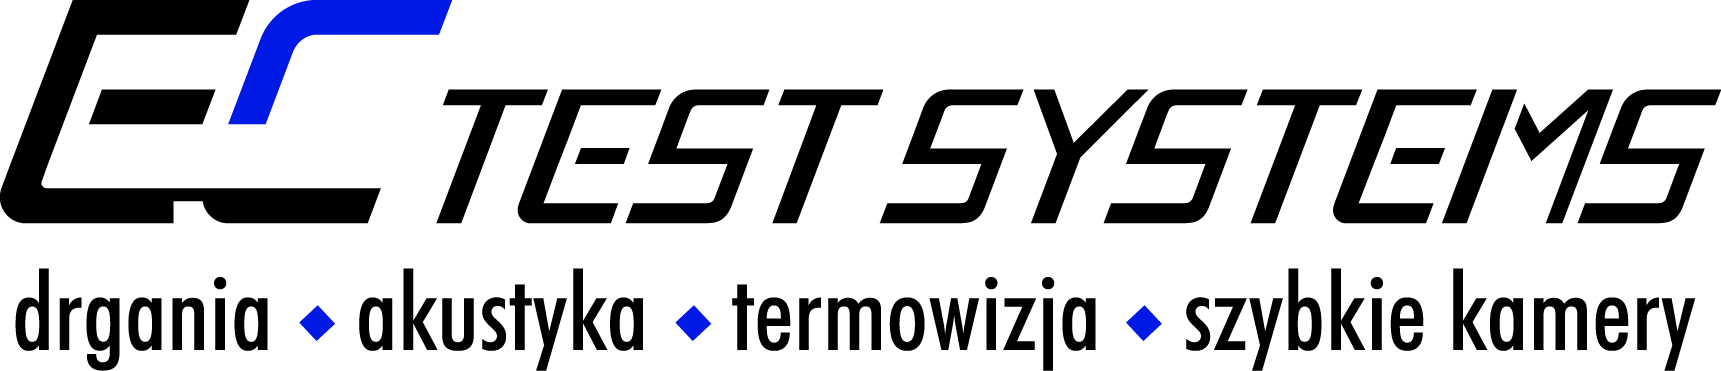 EC TEST Systems logo